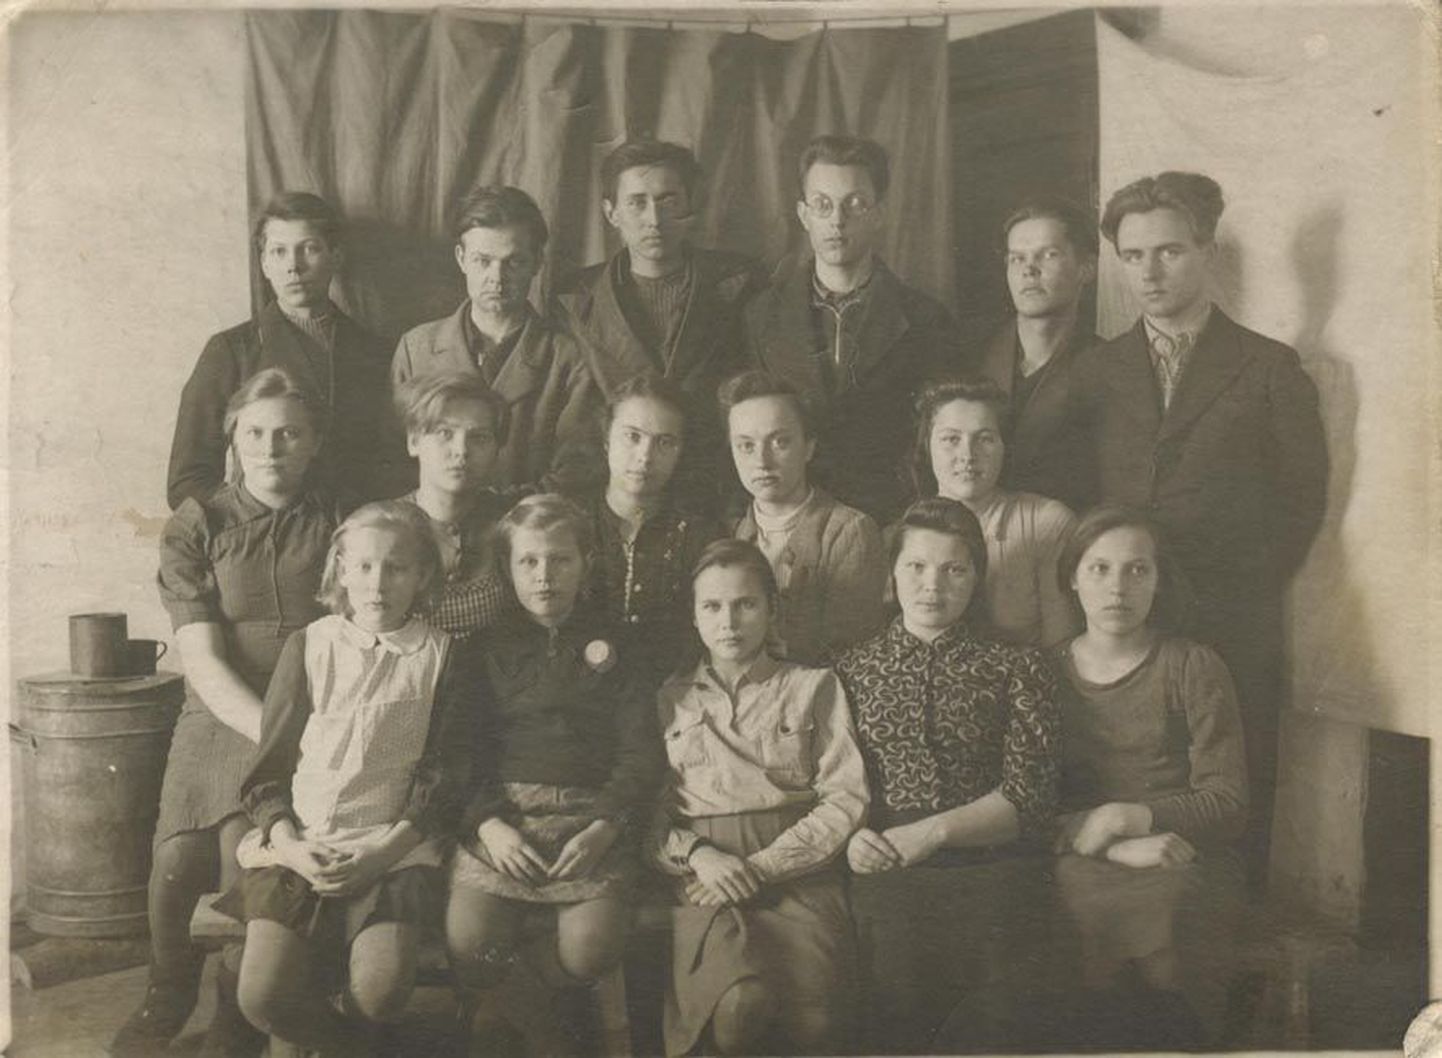 Berjozovka küla eesti noored, Ilme Kartus esireas keskel. 16. märts 1942.